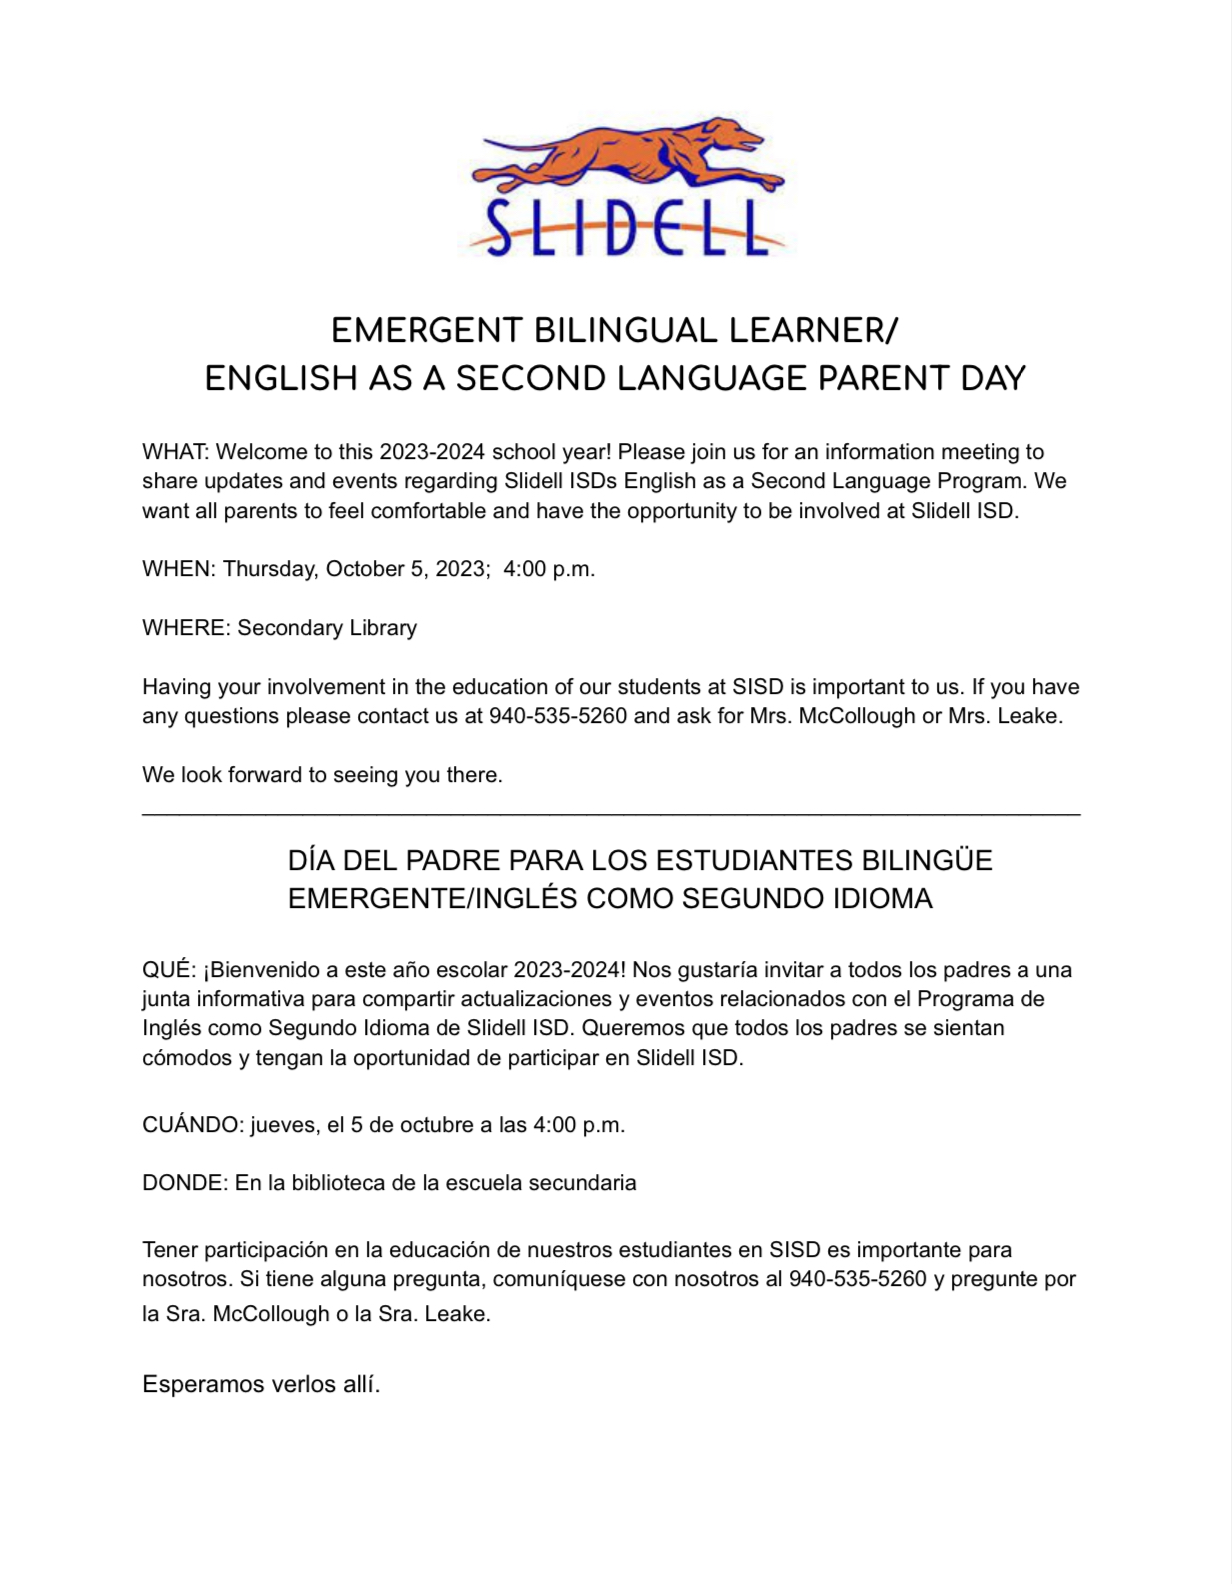 Emergent Bilingual Learner/ESL Parent Day 